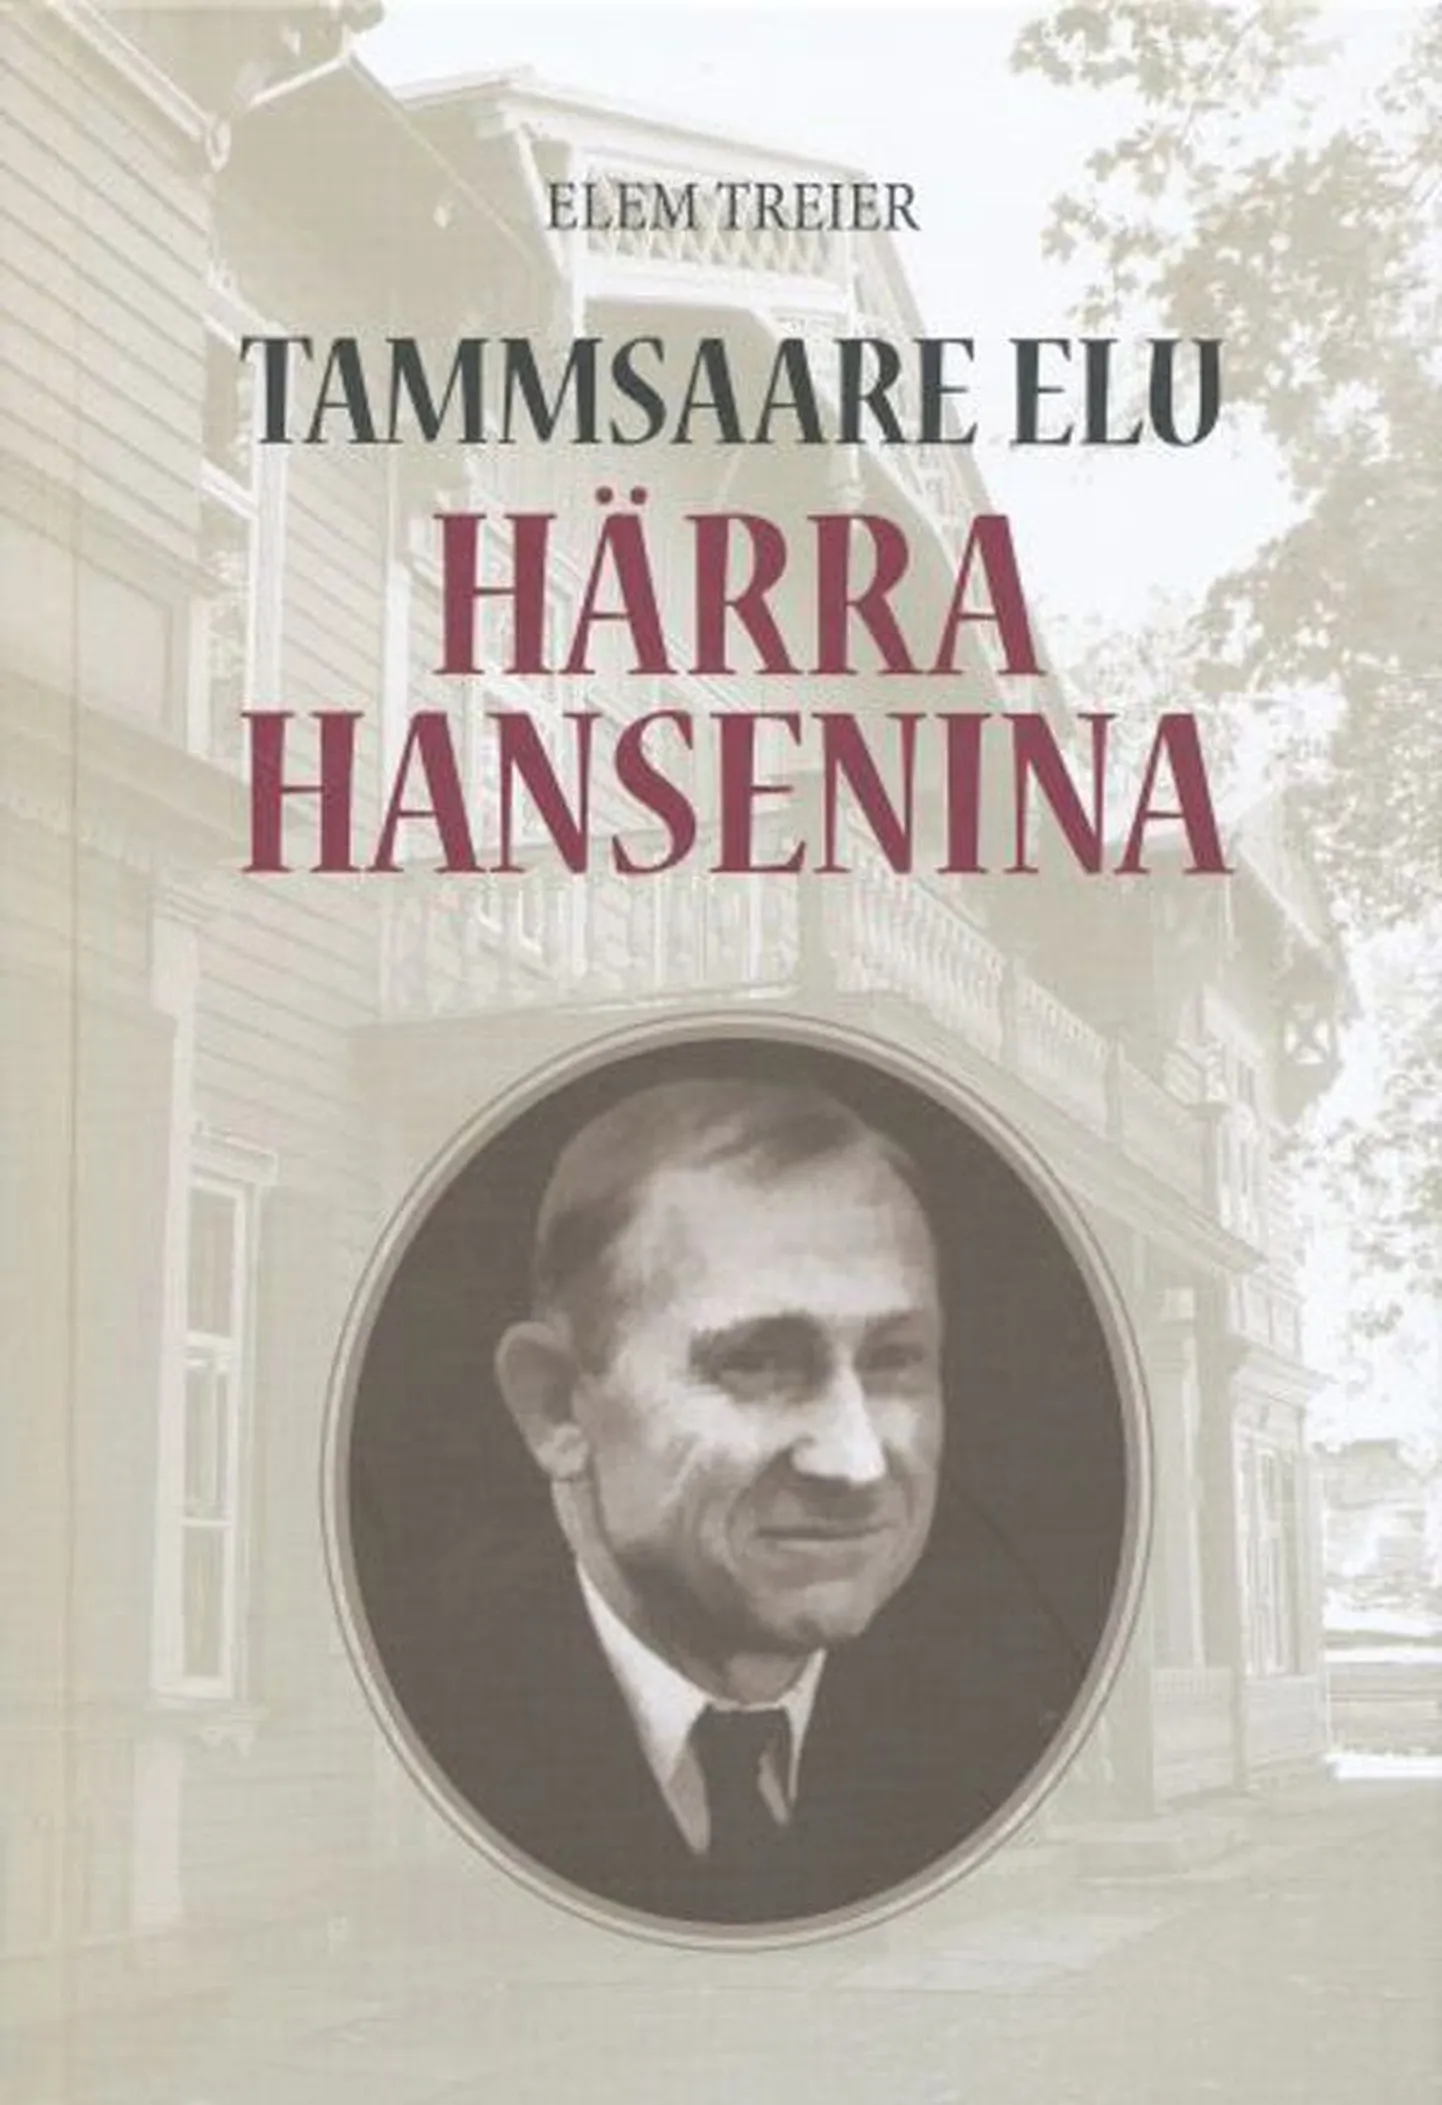 Raamat 
Elem Treier 
«Tammsaare elu härra Hansenina»
2. täiendatud trükk 
Eesti Keele Sihtasutus, Tallinn, 2011
302 lk